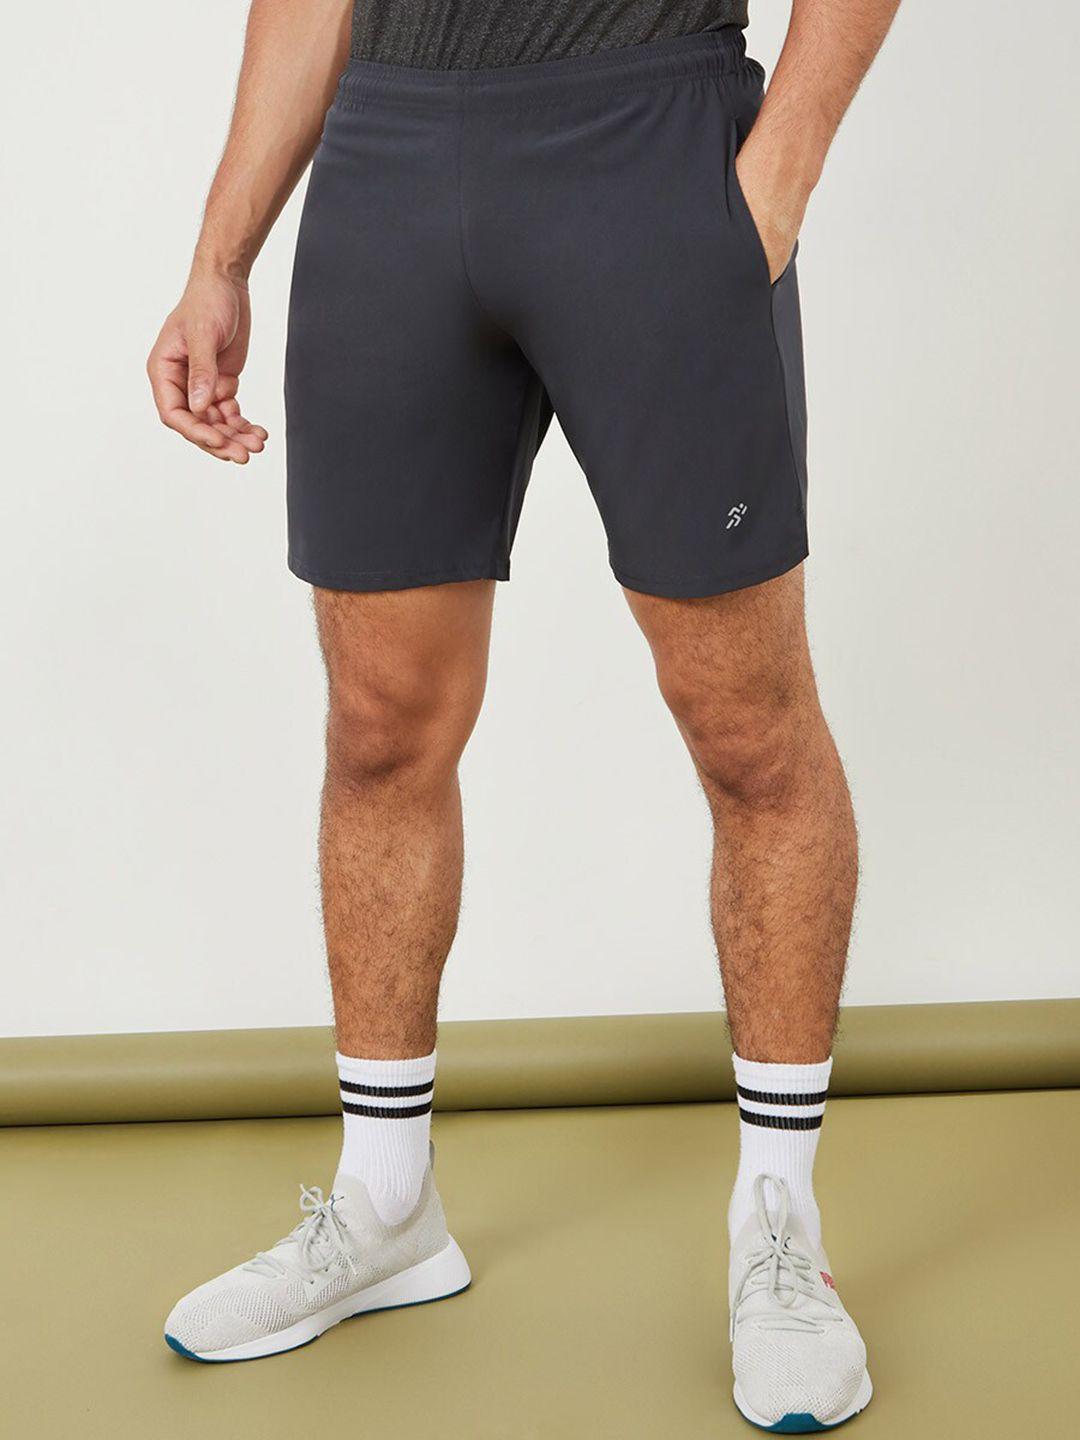 styli men grey sports shorts